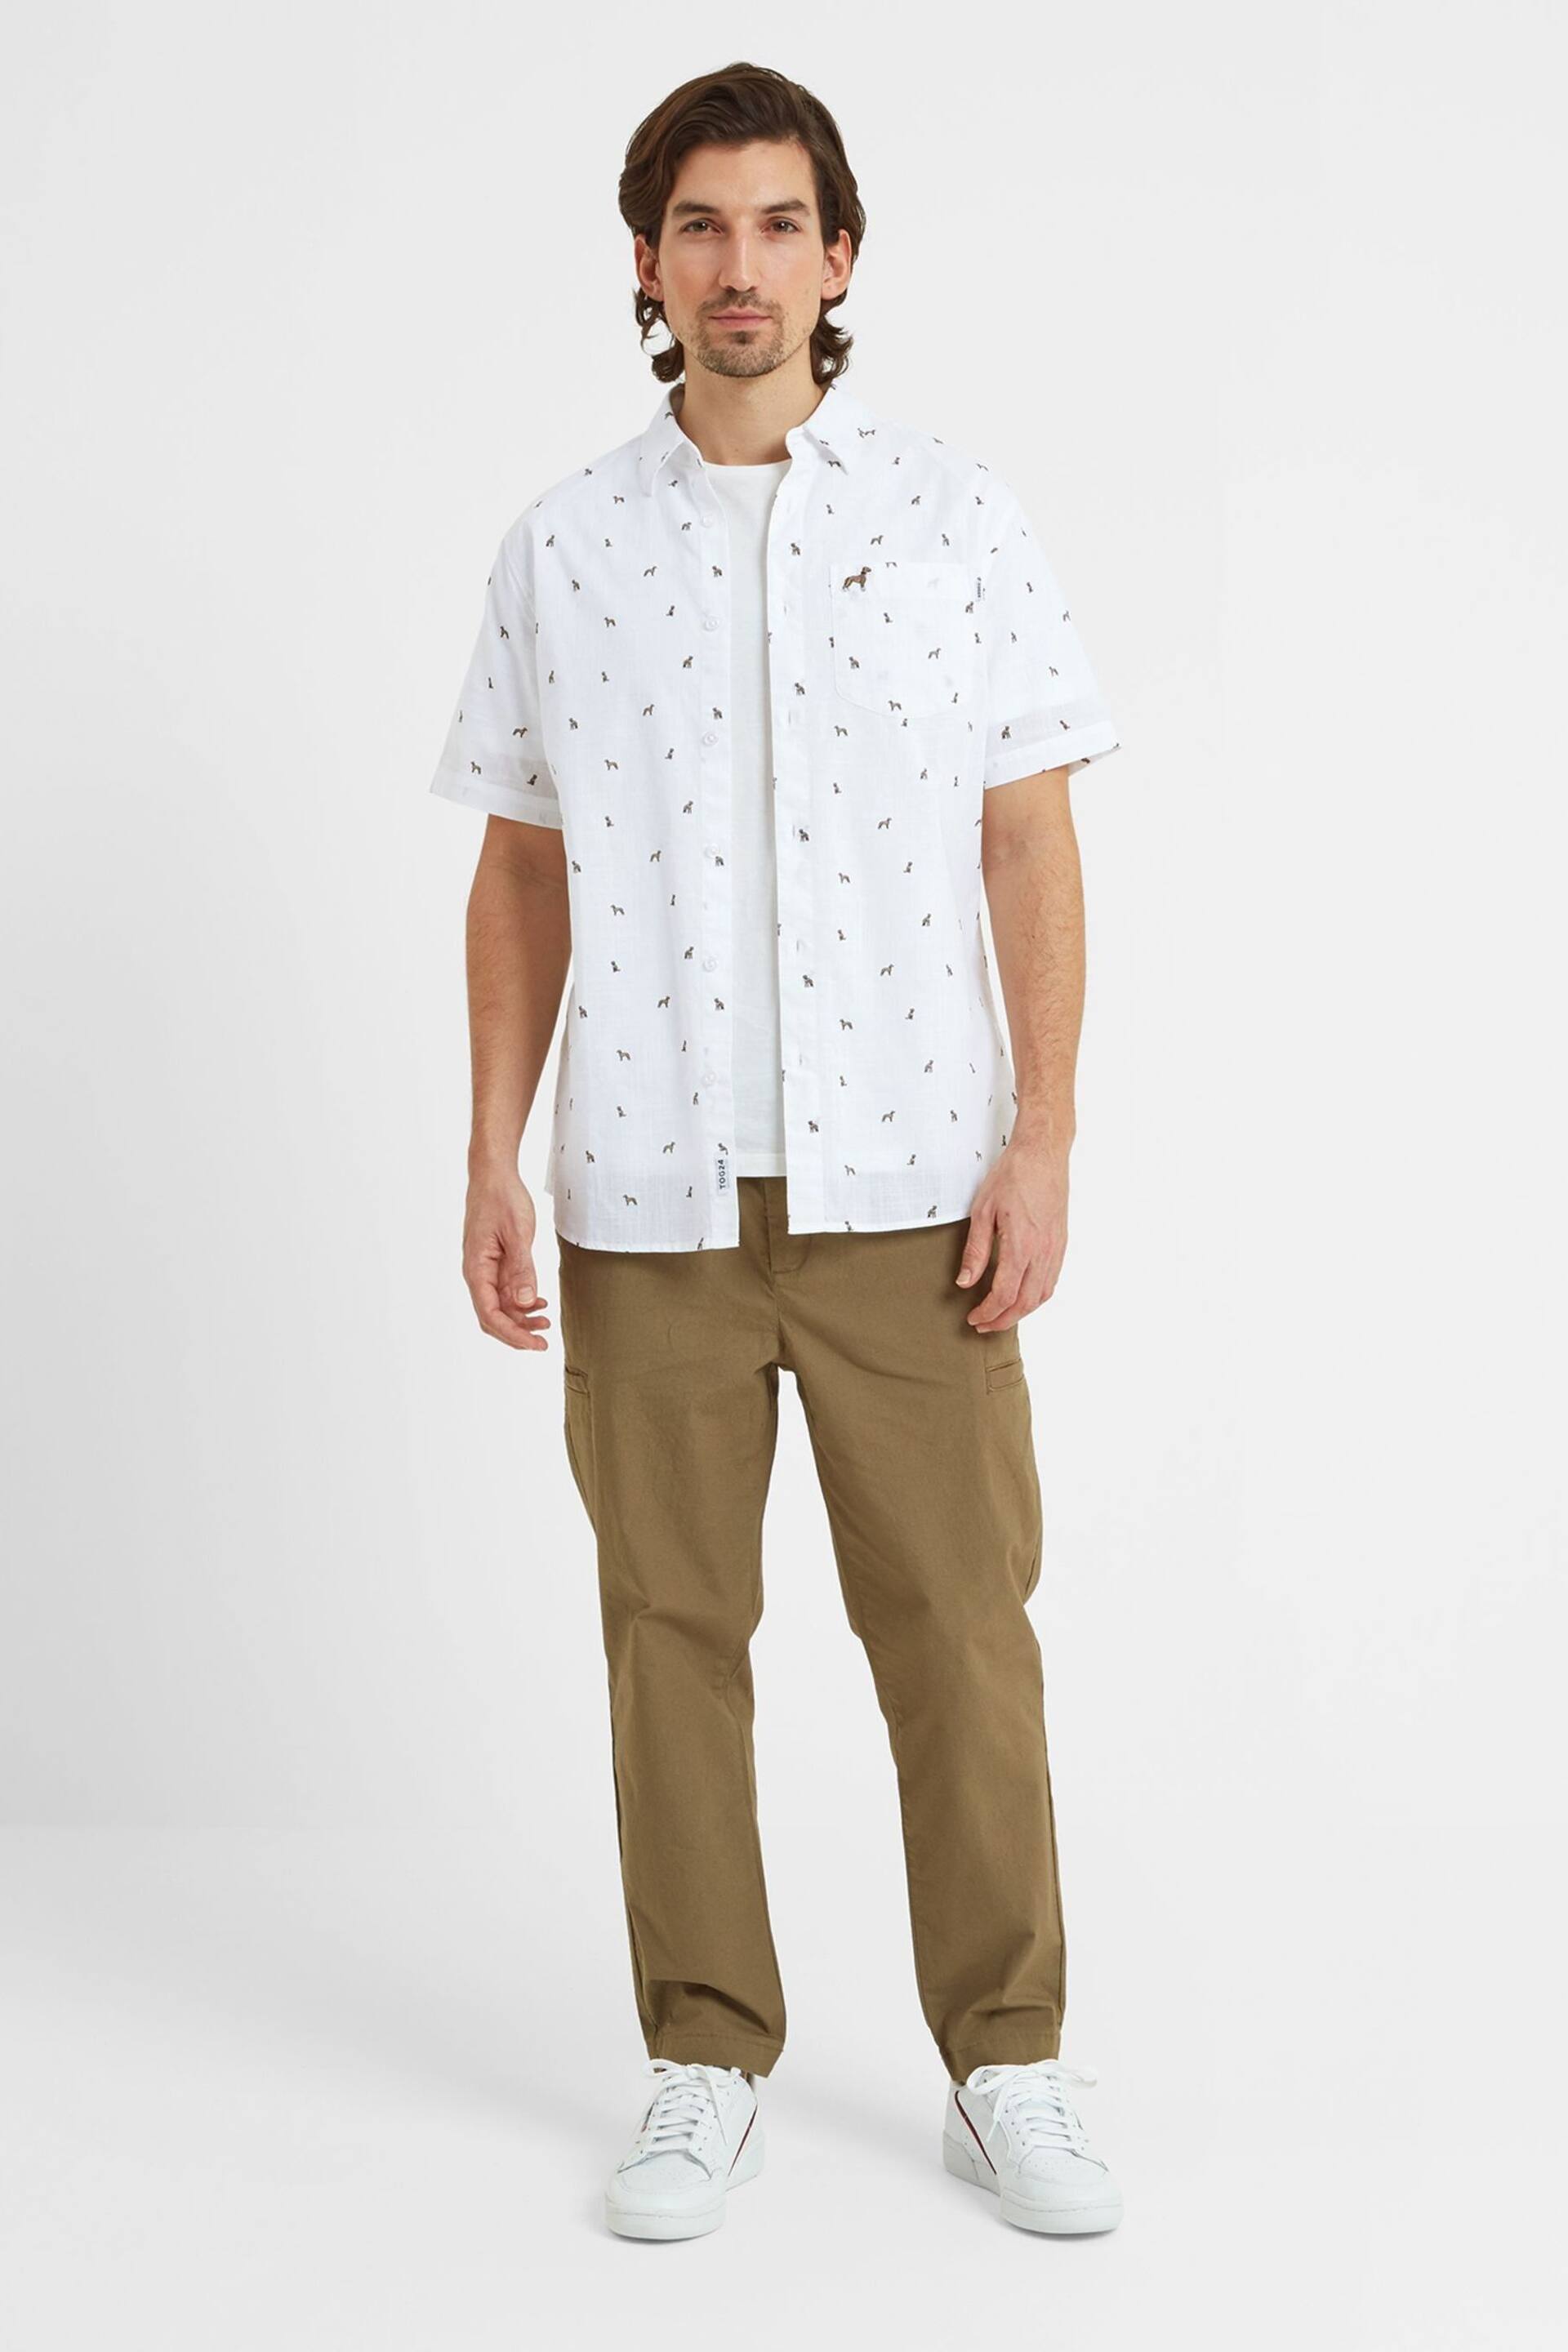 Tog 24 White Short Sleeve Floyd Shirt - Image 3 of 7